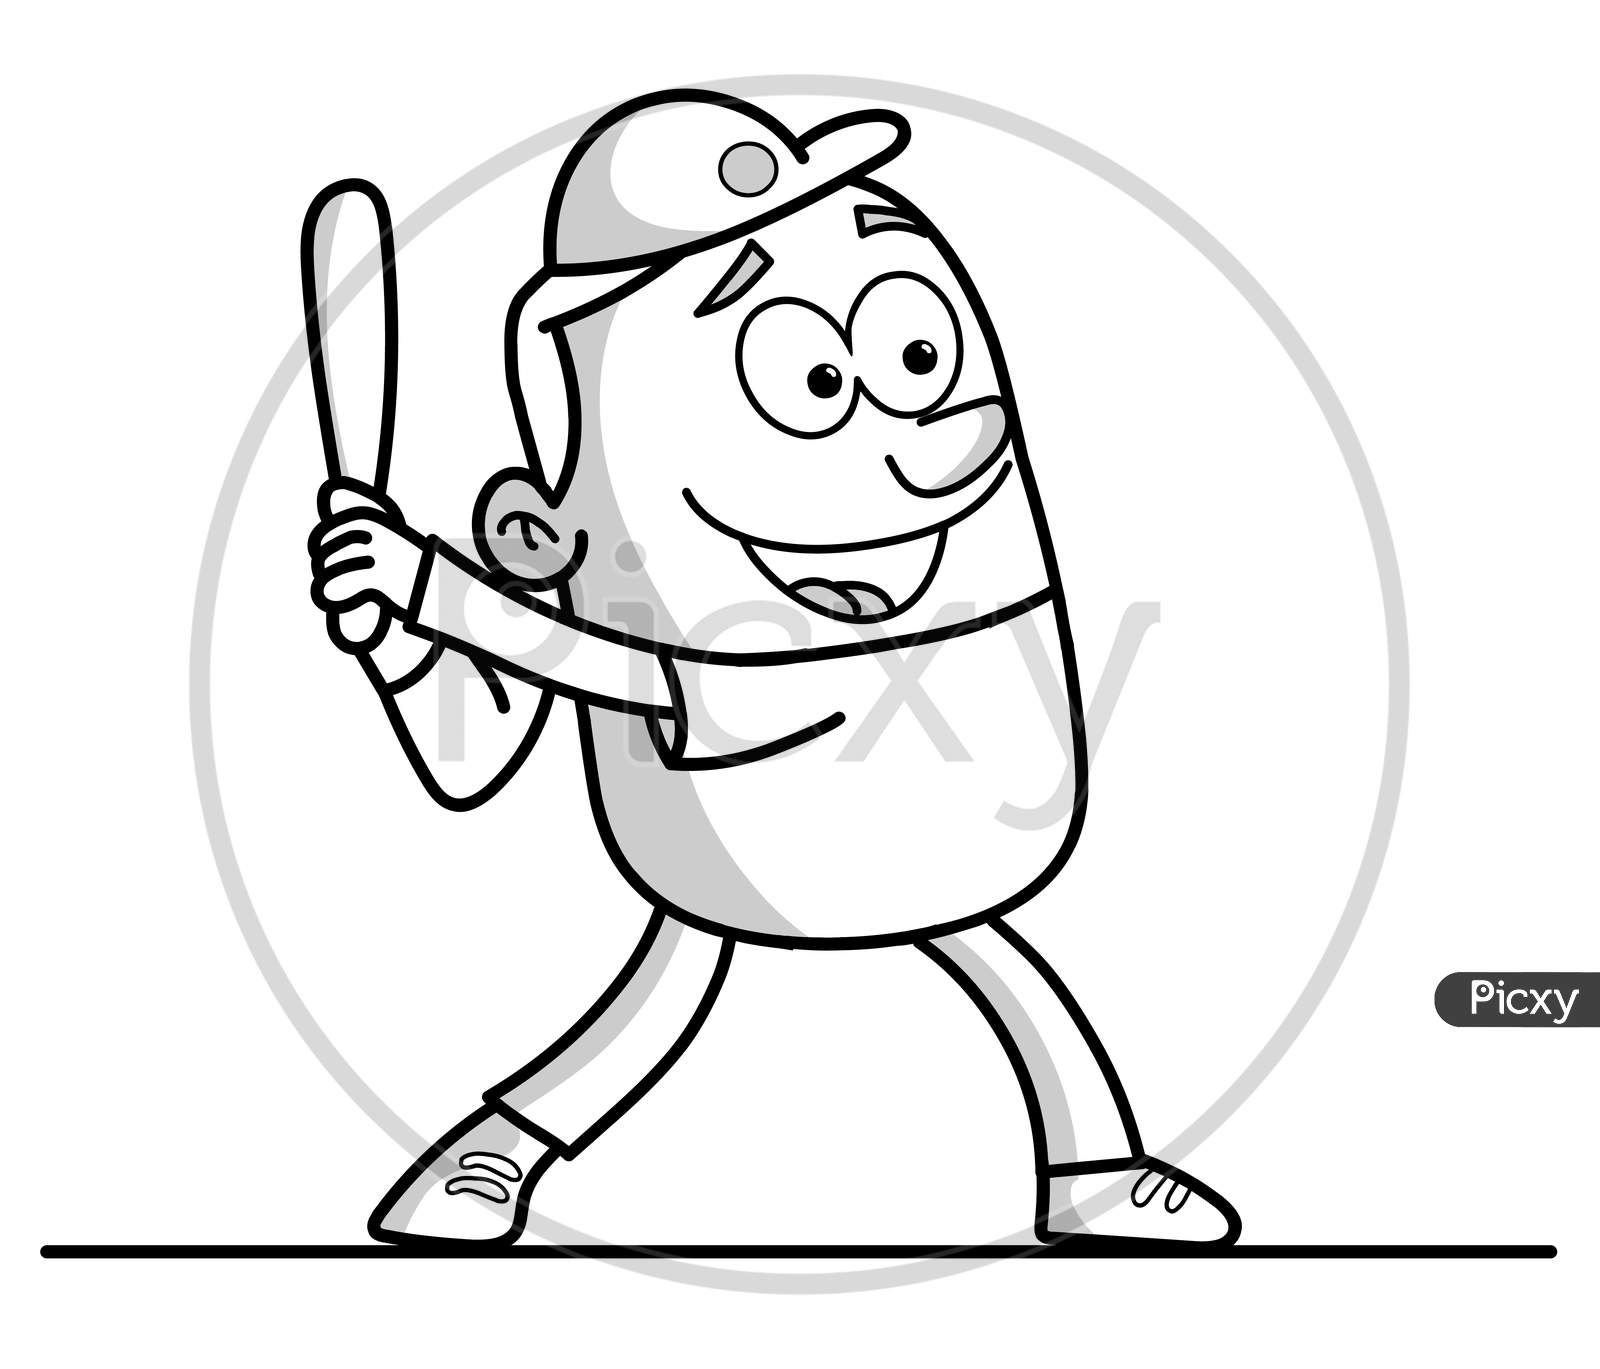 Base Ball Player Stick Figure Cartoon